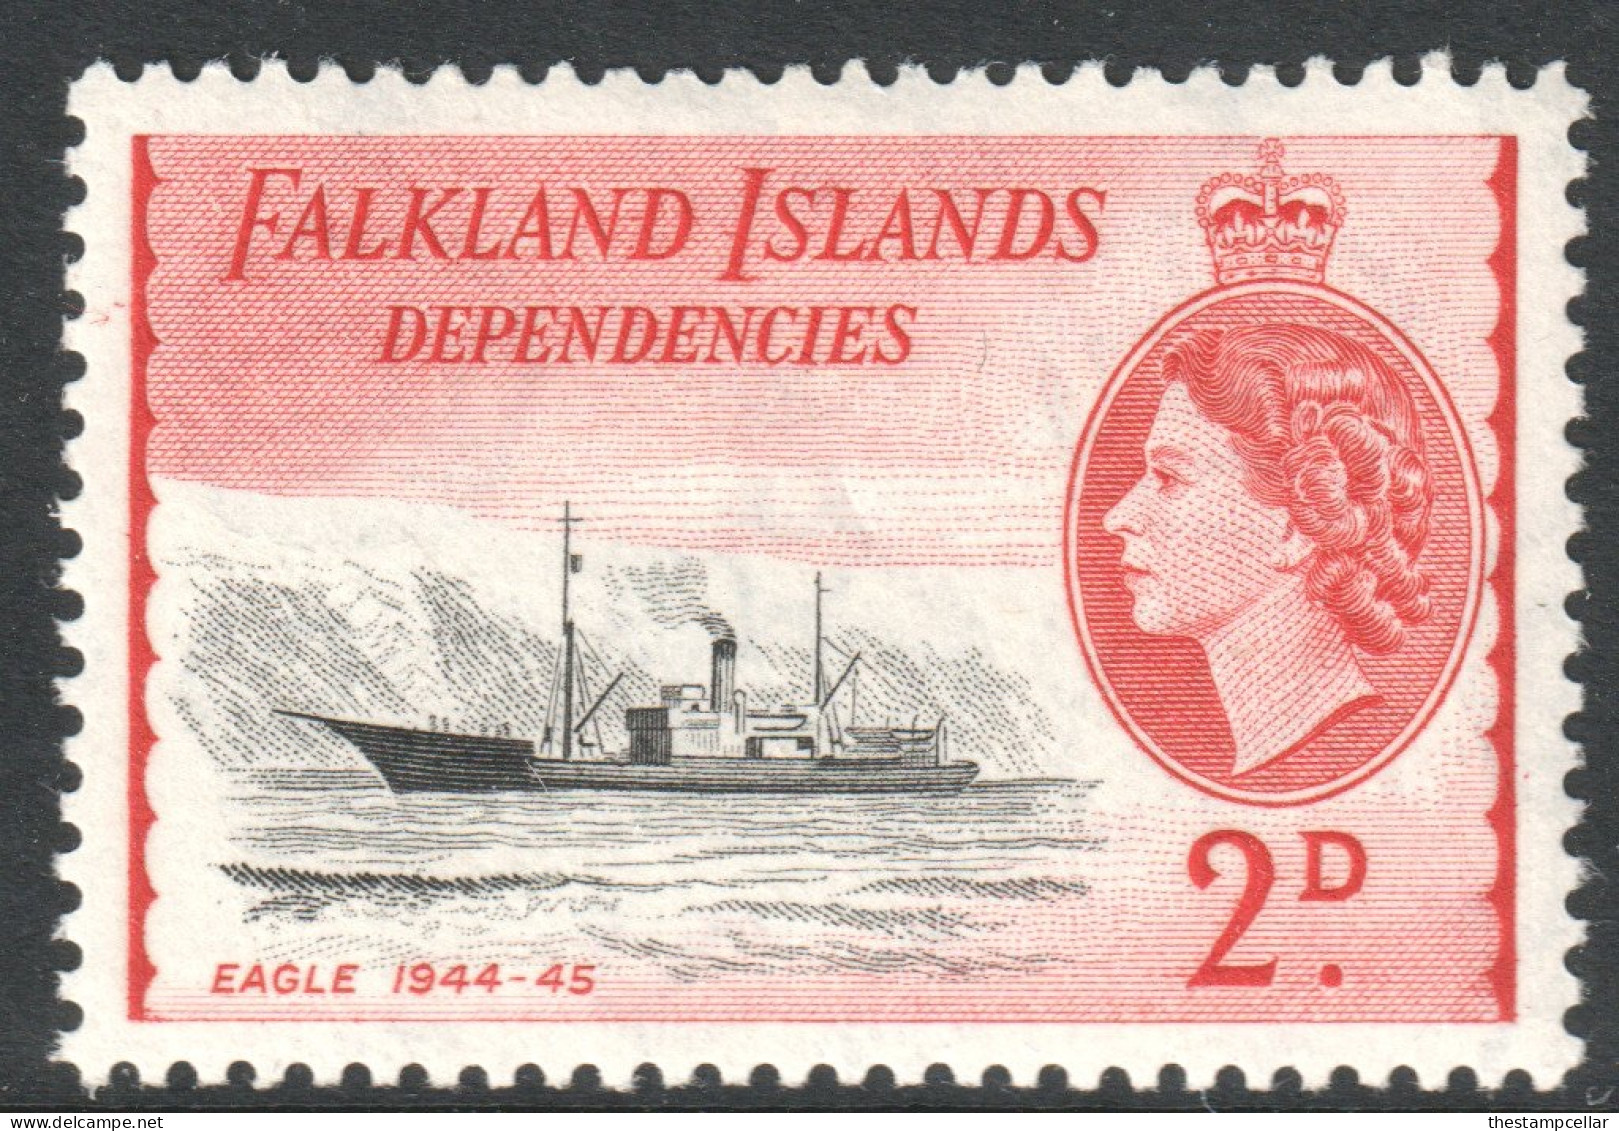 Falkland Islands Dependencies Scott 1L22 - SG G29, 1954 Elizabeth II 2d MH* - Falklandinseln